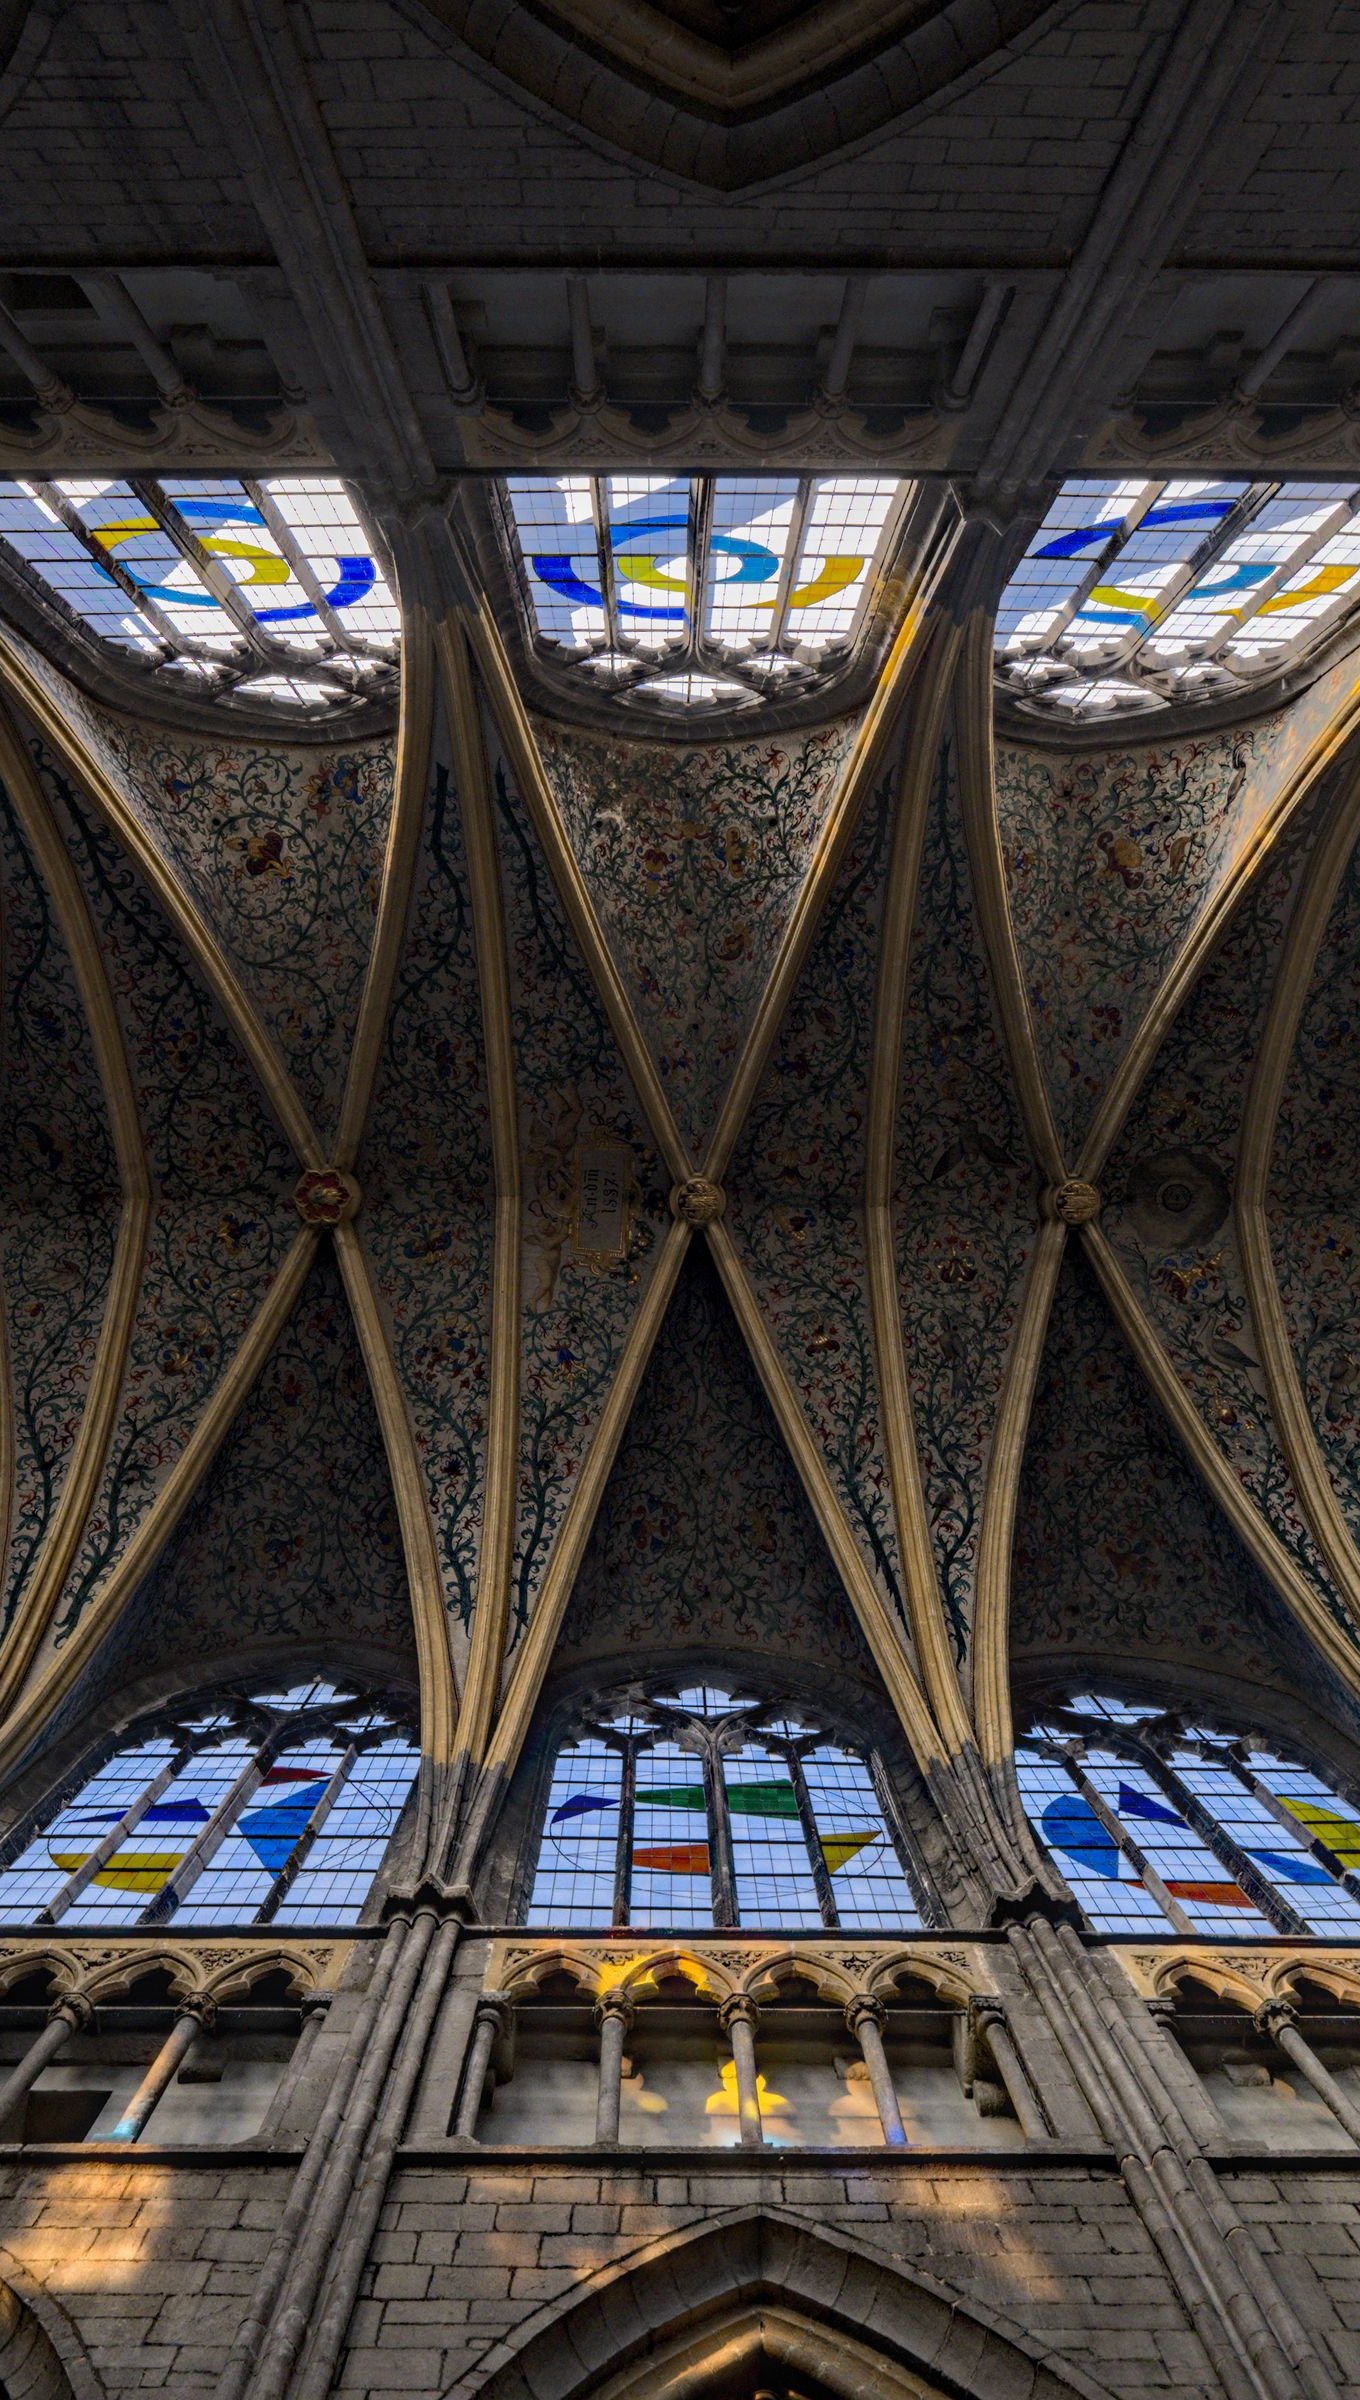 Fondos de pantalla Arcos de iglesia gótica Vertical